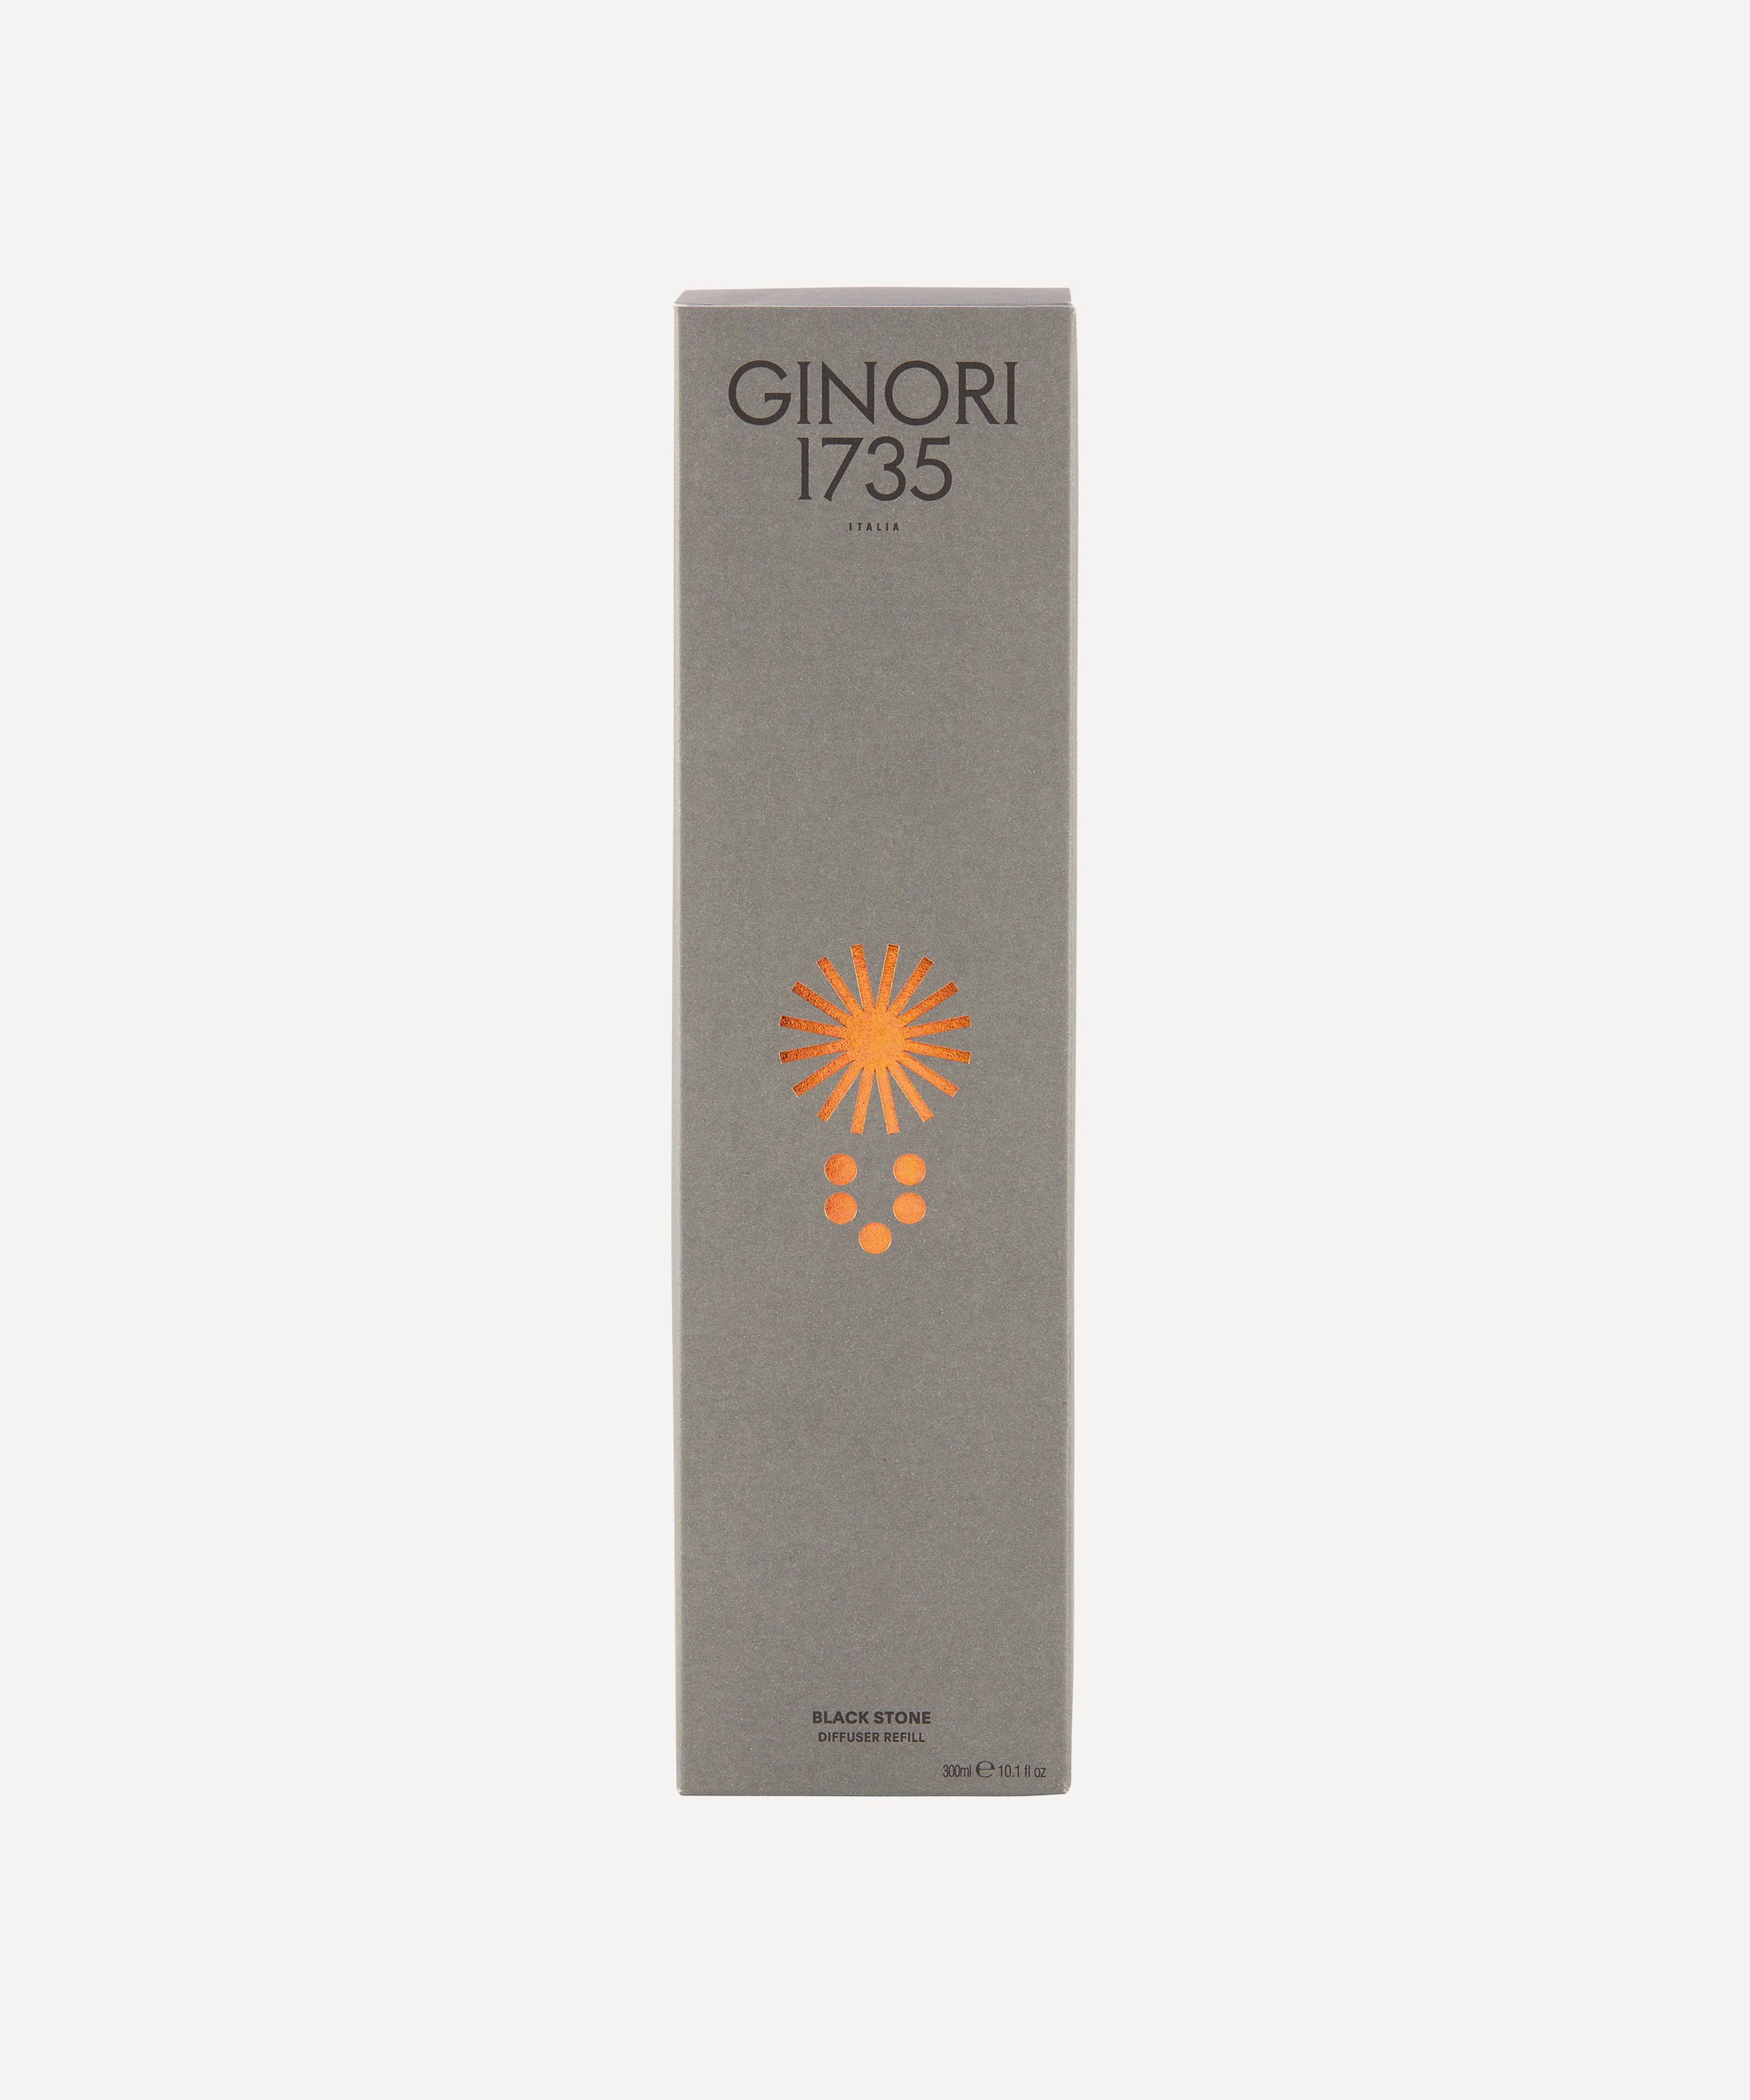 Ginori 1735 LCDC Black Stone Diffuser Refill - 300ml